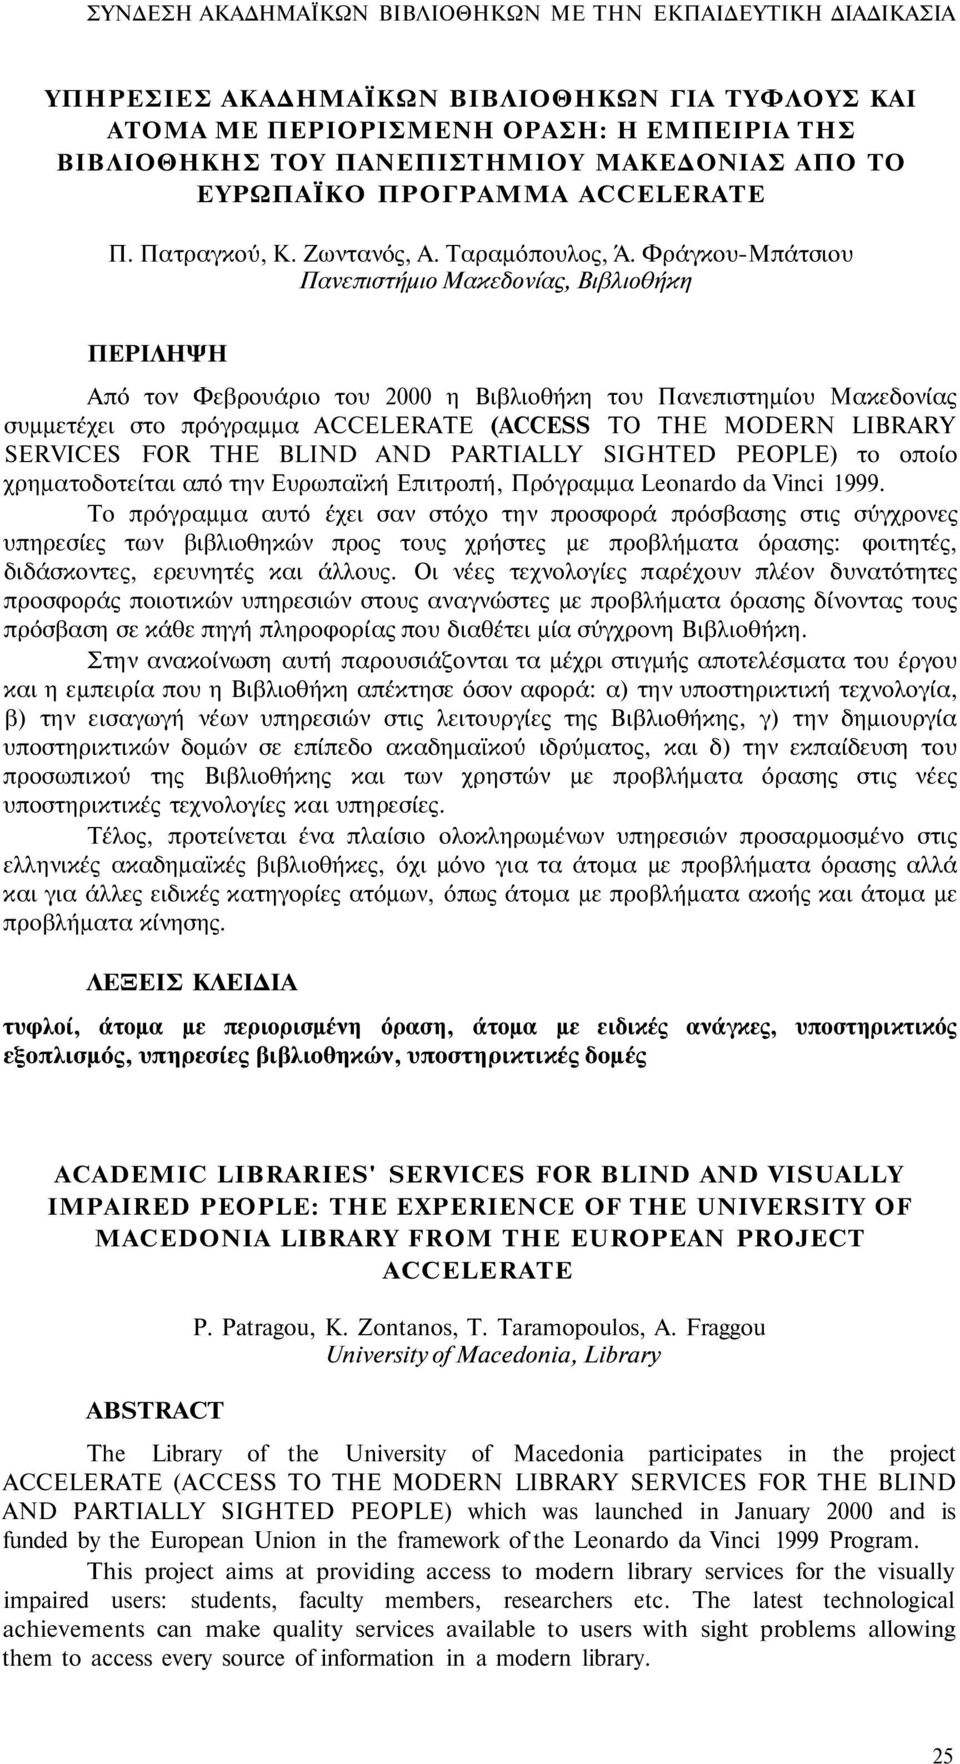 Φράγκου-Μπάτσιου Πανεπιστήμιο Μακεδονίας, Βιβλιοθήκη ΠΕΡΙΛΗΨΗ Από τον Φεβρουάριο του 2000 η Βιβλιοθήκη του Πανεπιστημίου Μακεδονίας συμμετέχει στο πρόγραμμα ACCELERATE (ACCESS TO THE MODERN LIBRARY